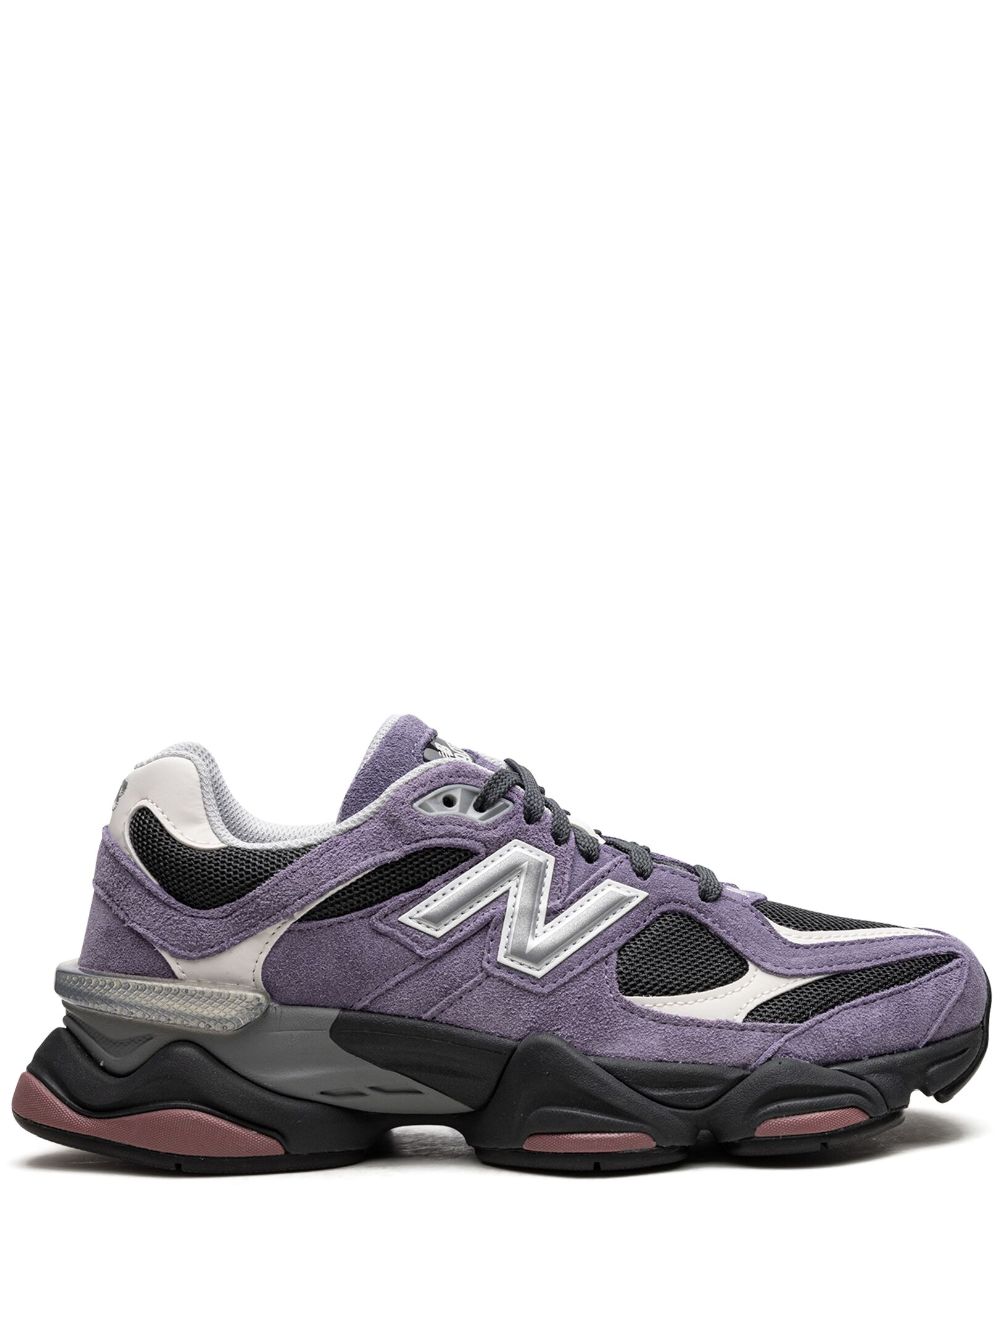 New Balance 9060 "Violet Noir" sneakers - Purple